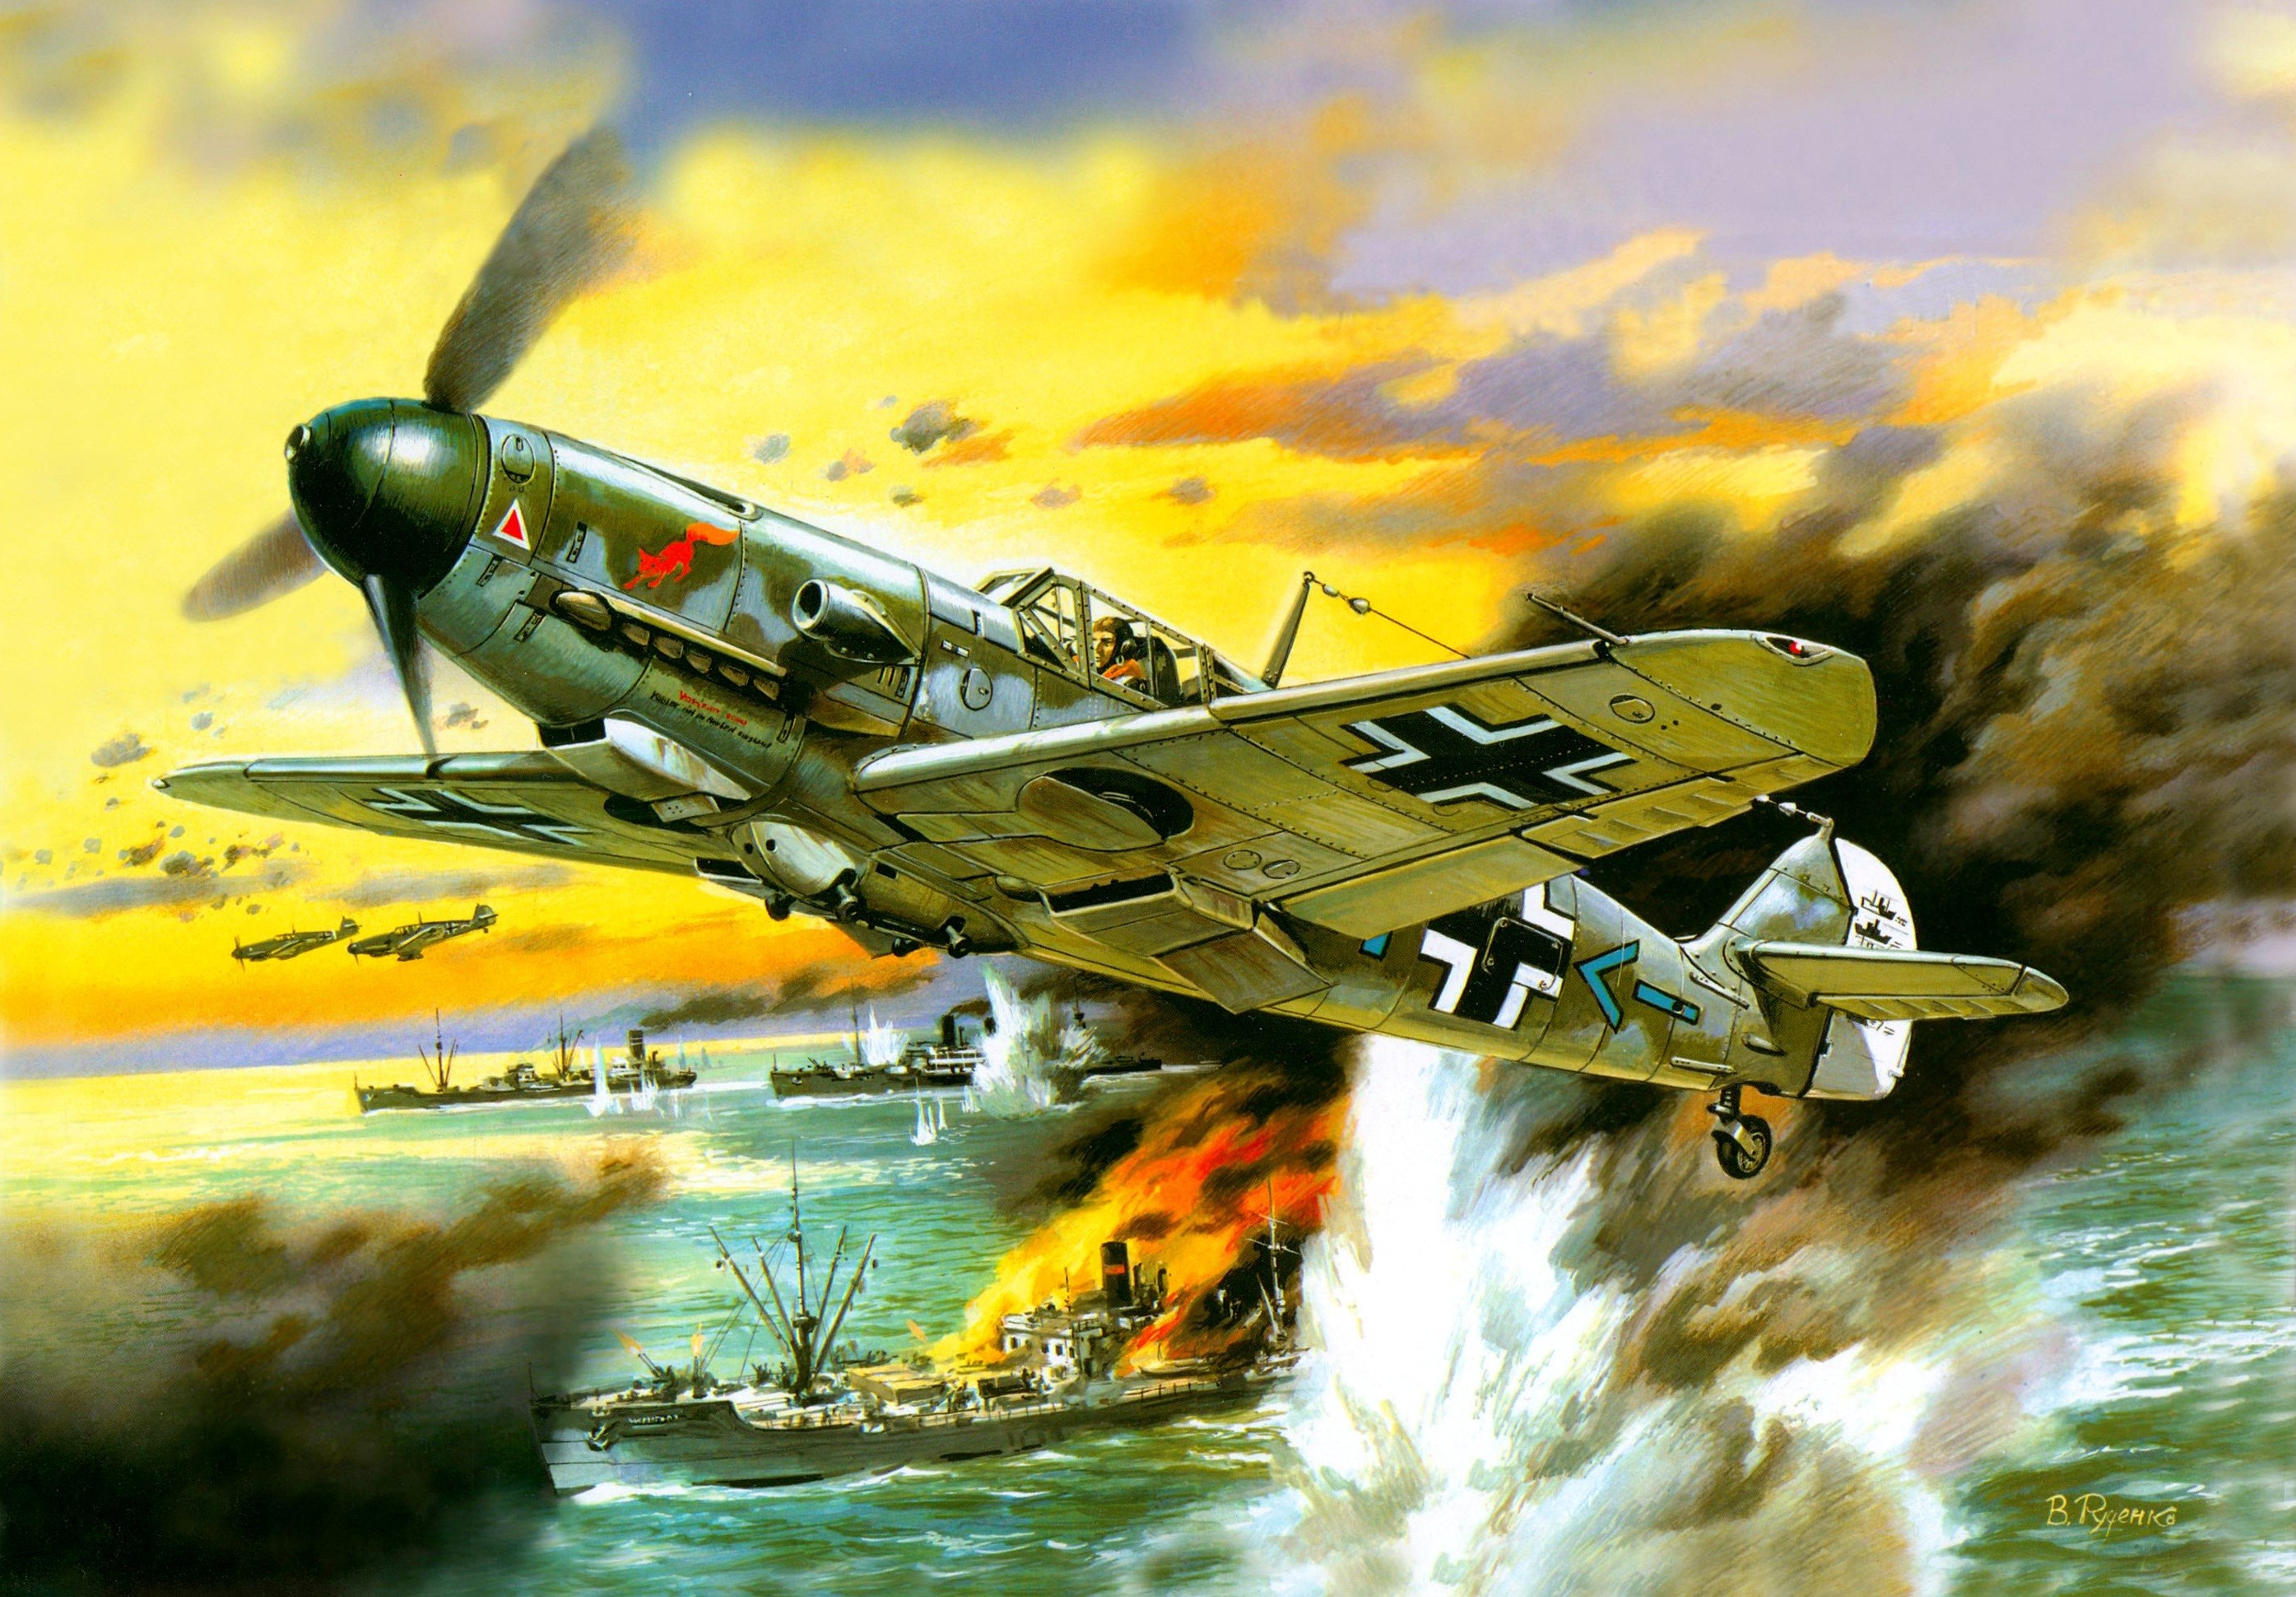 Messerschmitt Messerschmitt Bf 109 World War Ii Germany Military Aircraft Luftwaffe Combat Smoke Fir 2790x1940